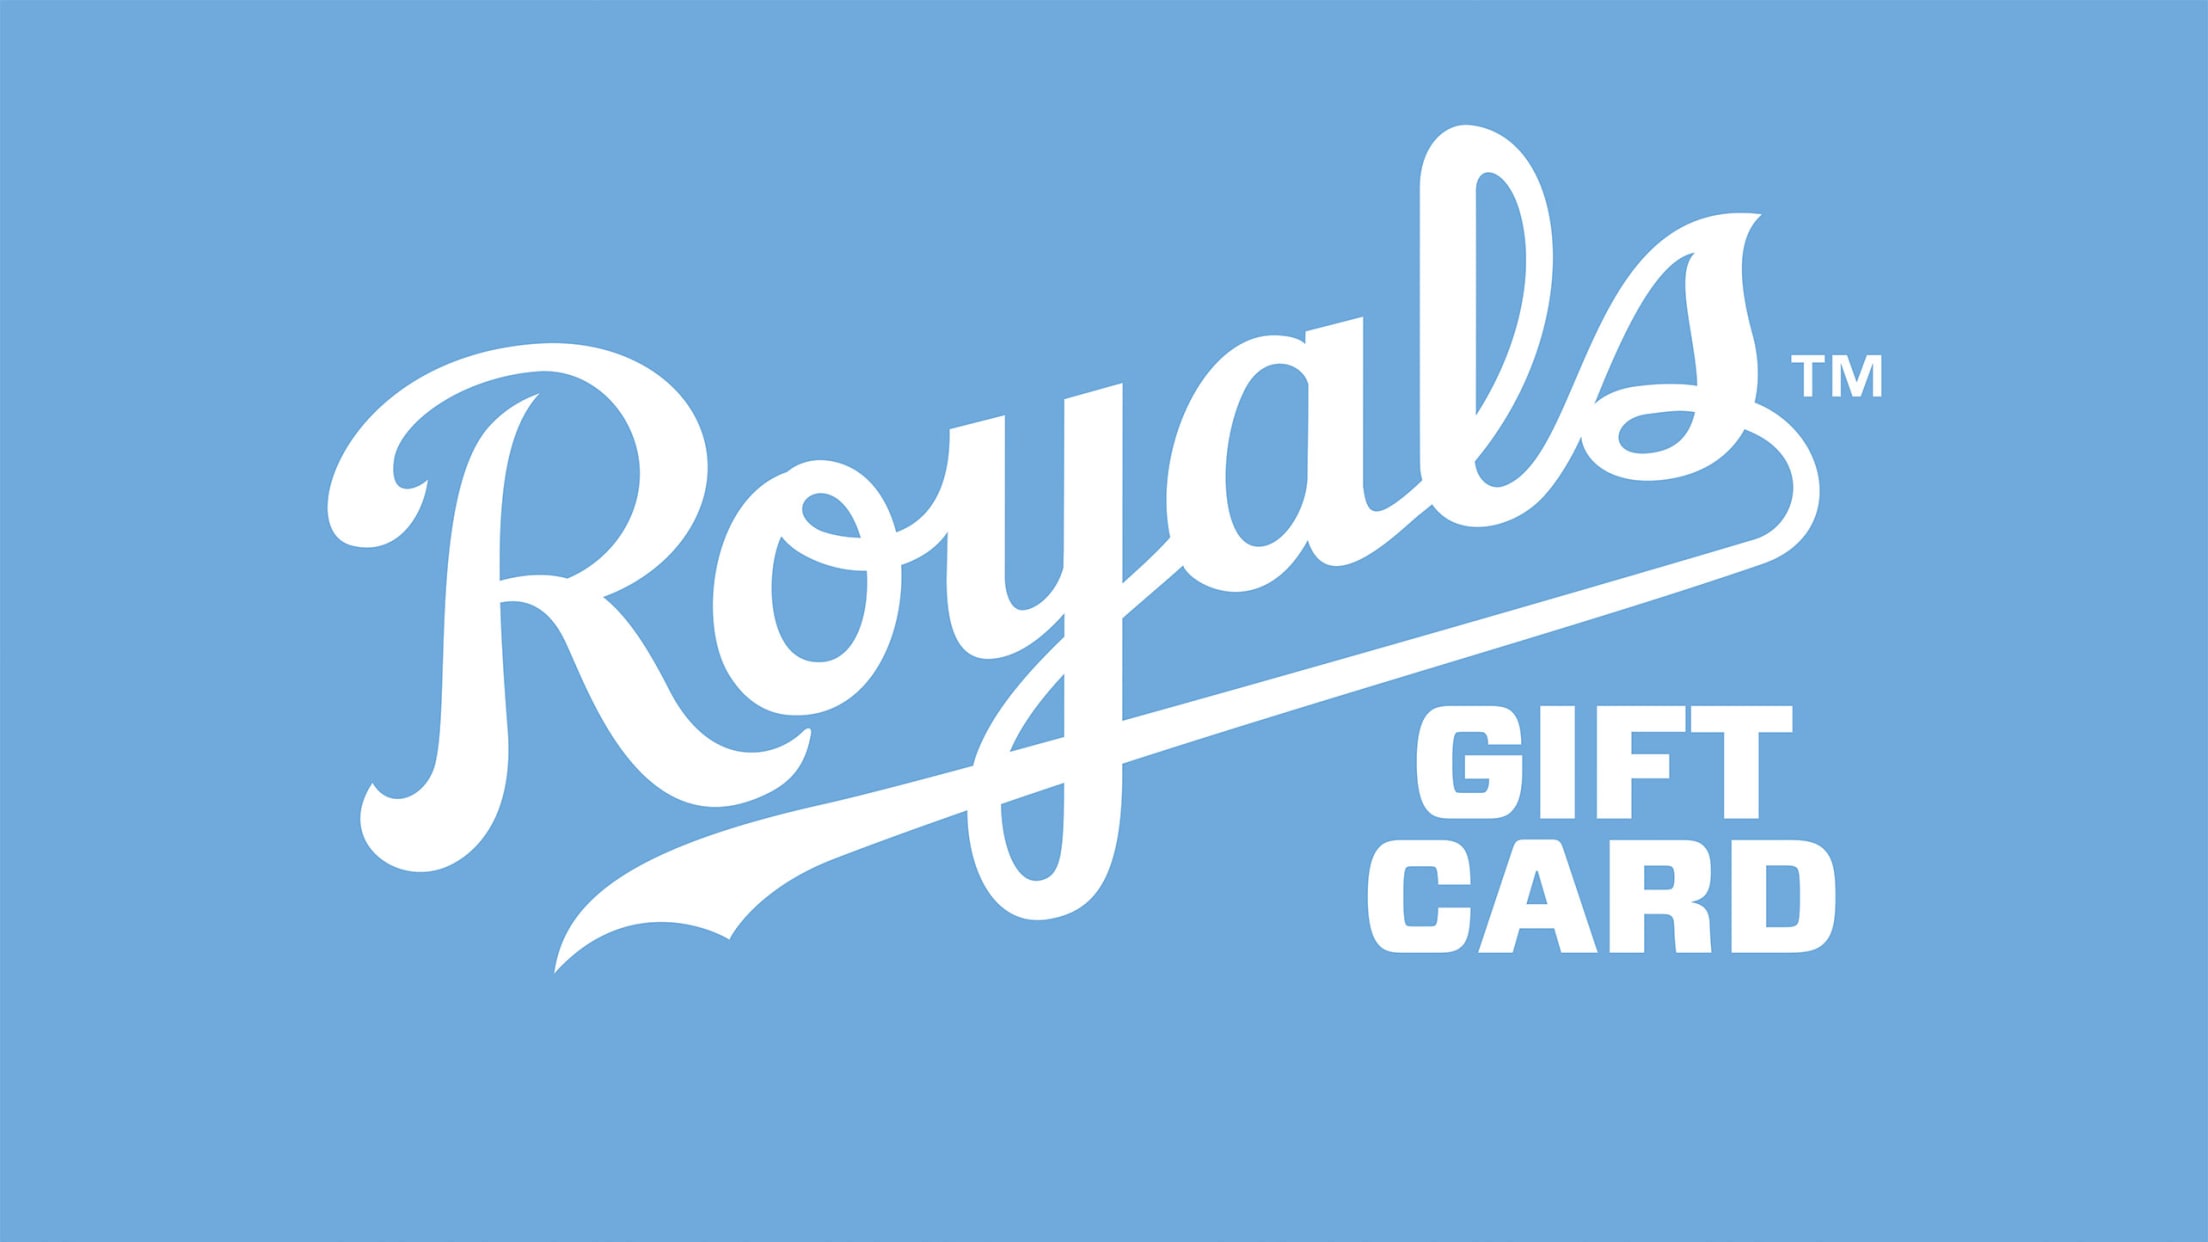 Royals Gift Cards  Kansas City Royals